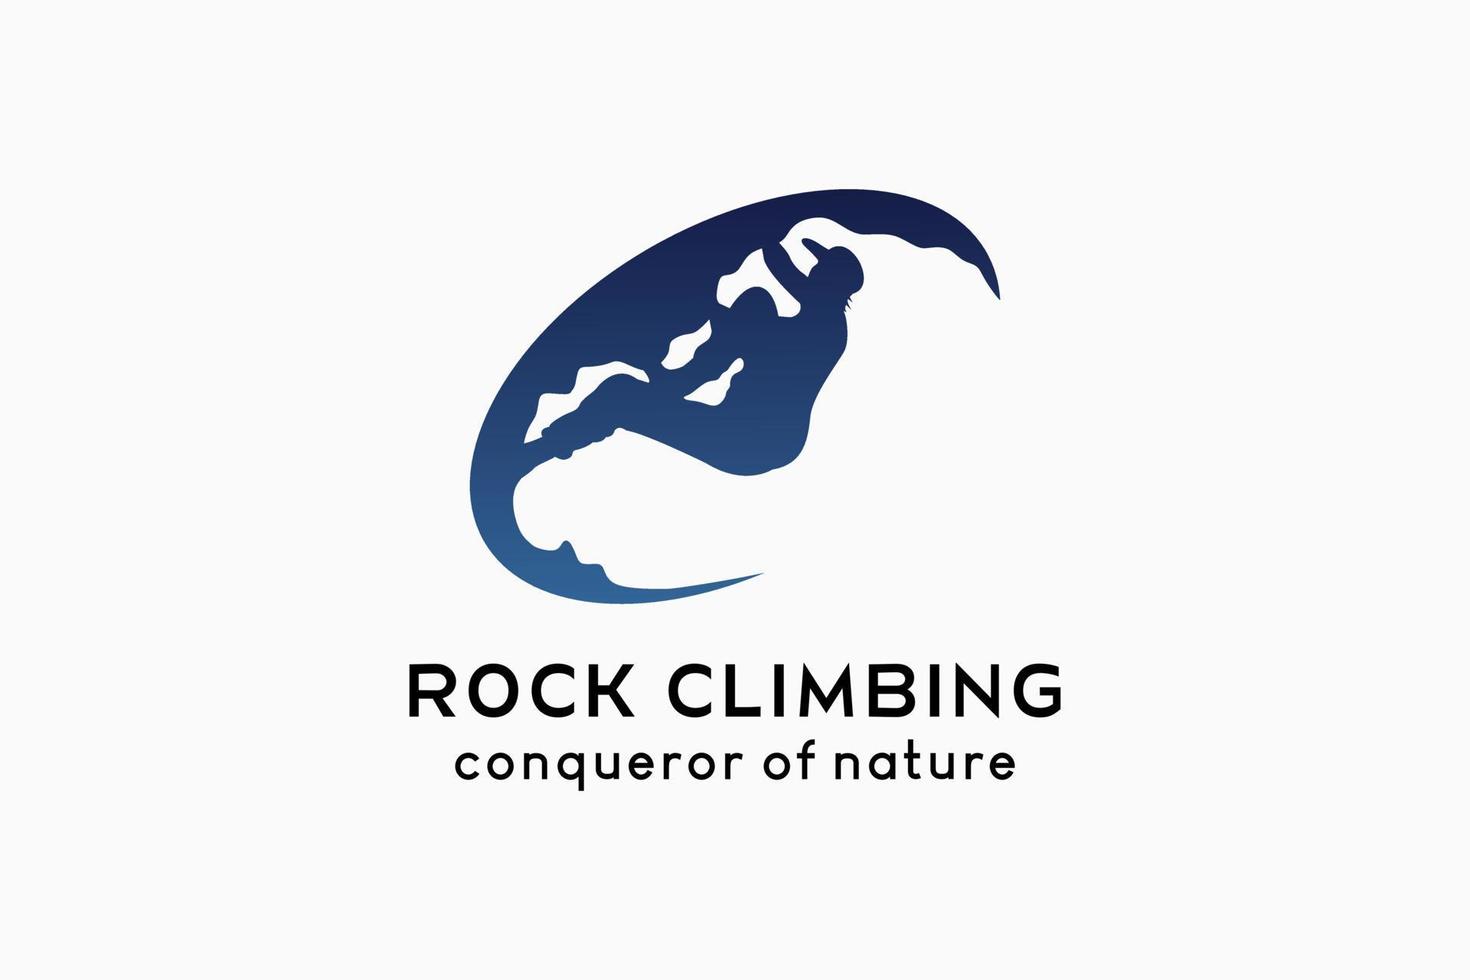 création de logo d'escalade, silhouette de personnes escaladant un rocher dans un ovale vecteur